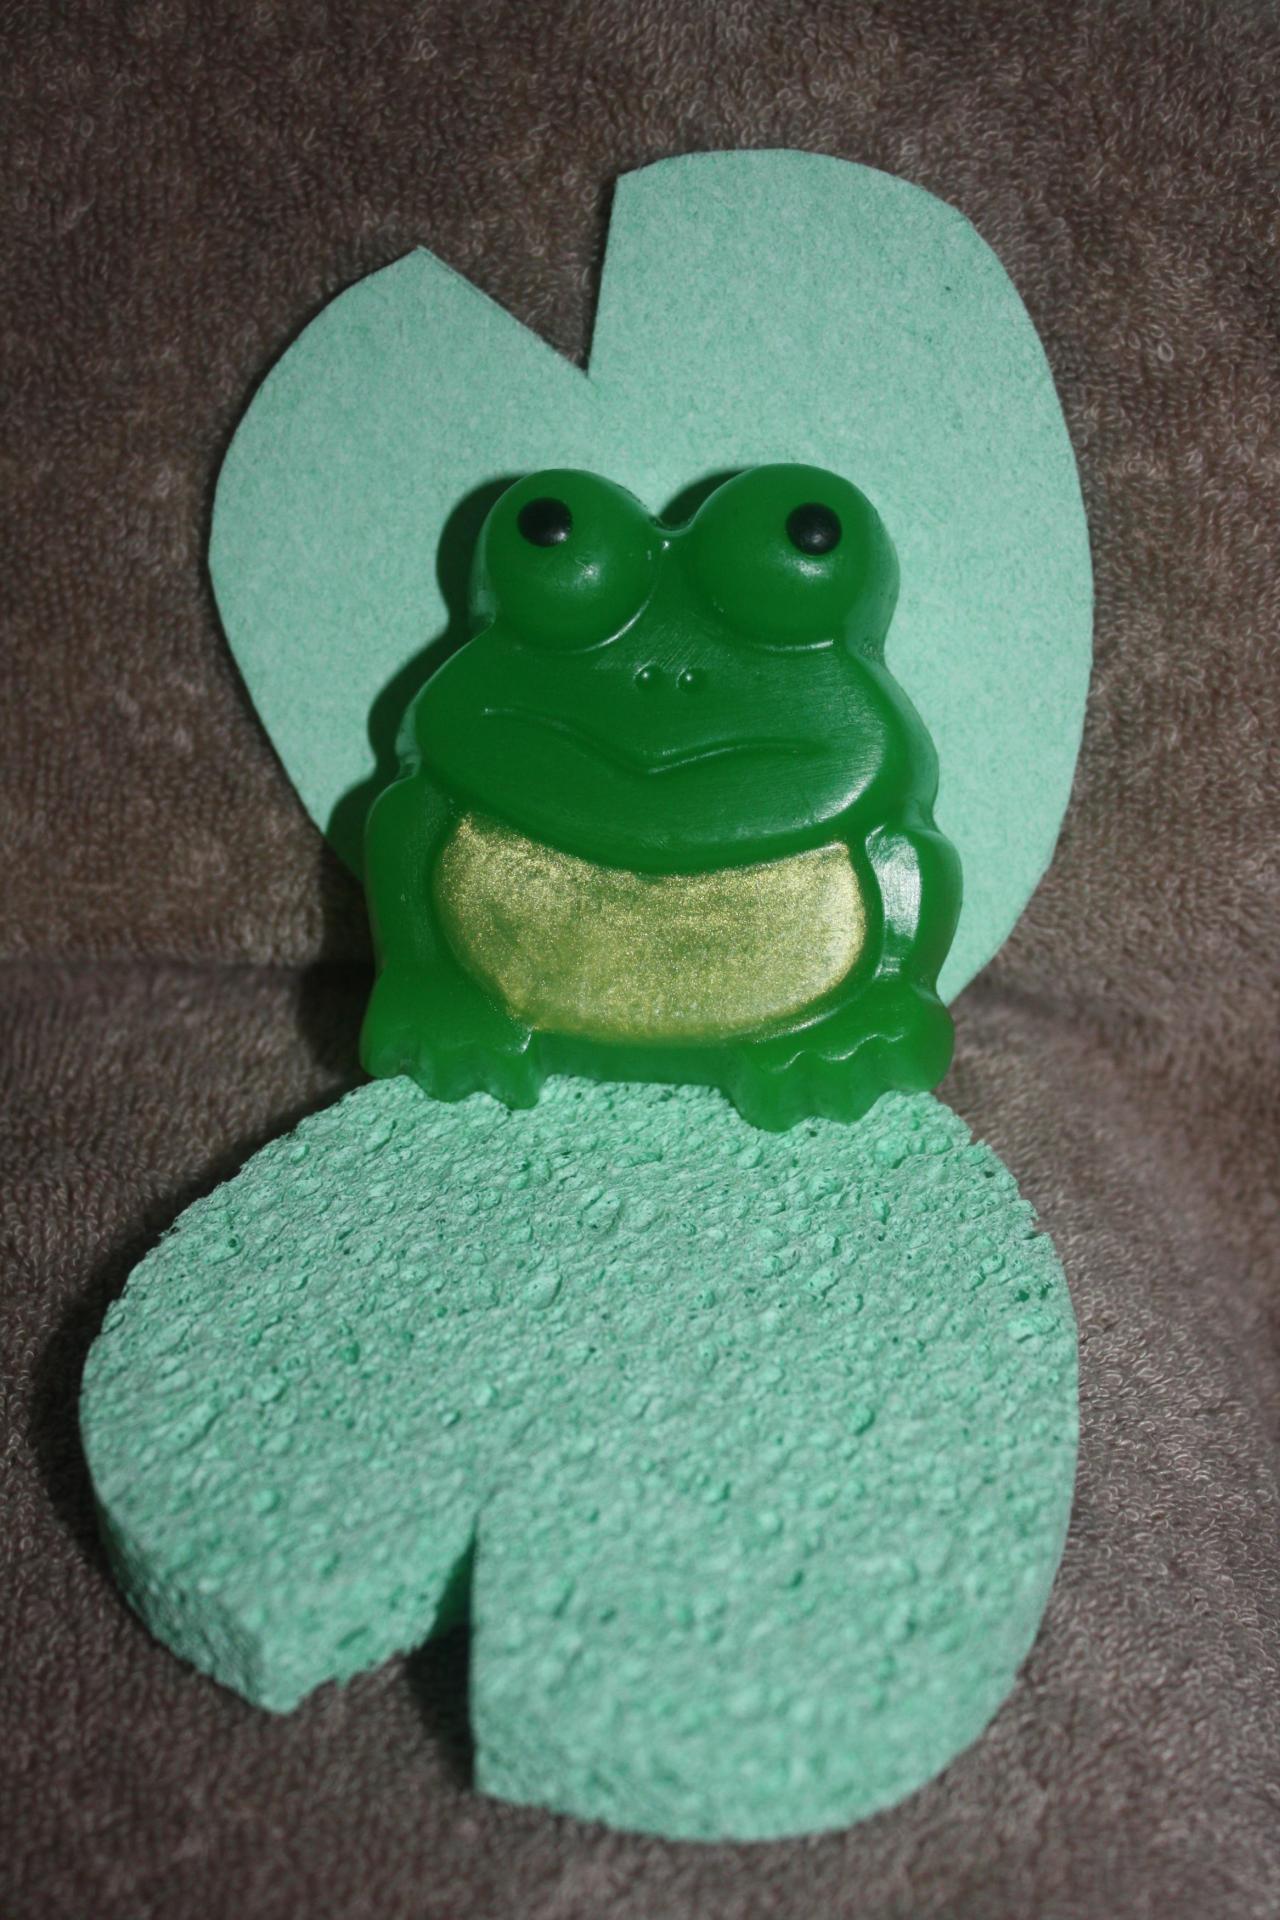 Frog Soap With Sponge Leaf